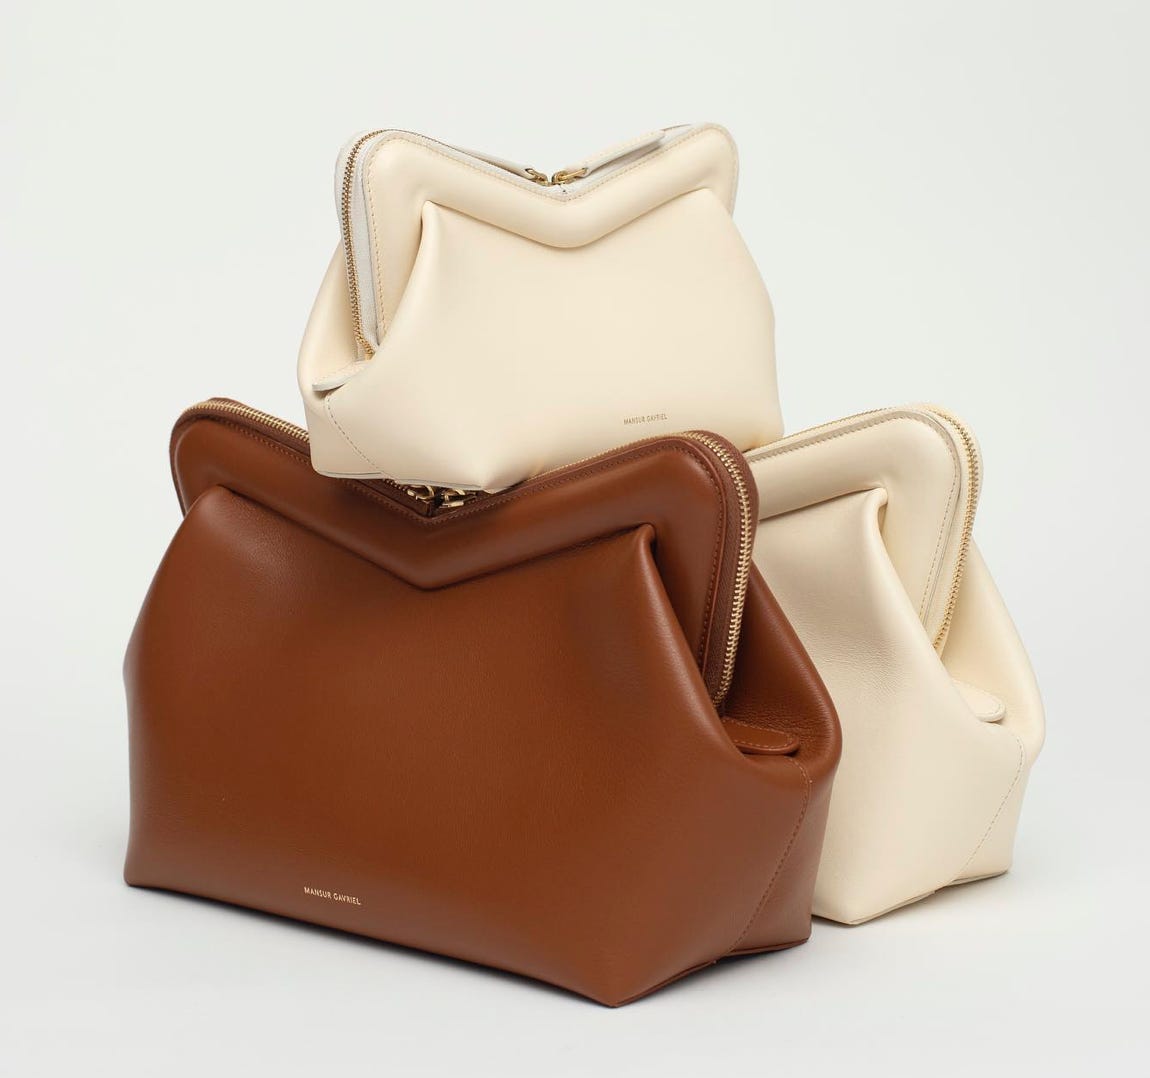 Mansur Gavriel Authenticated Leather Handbag